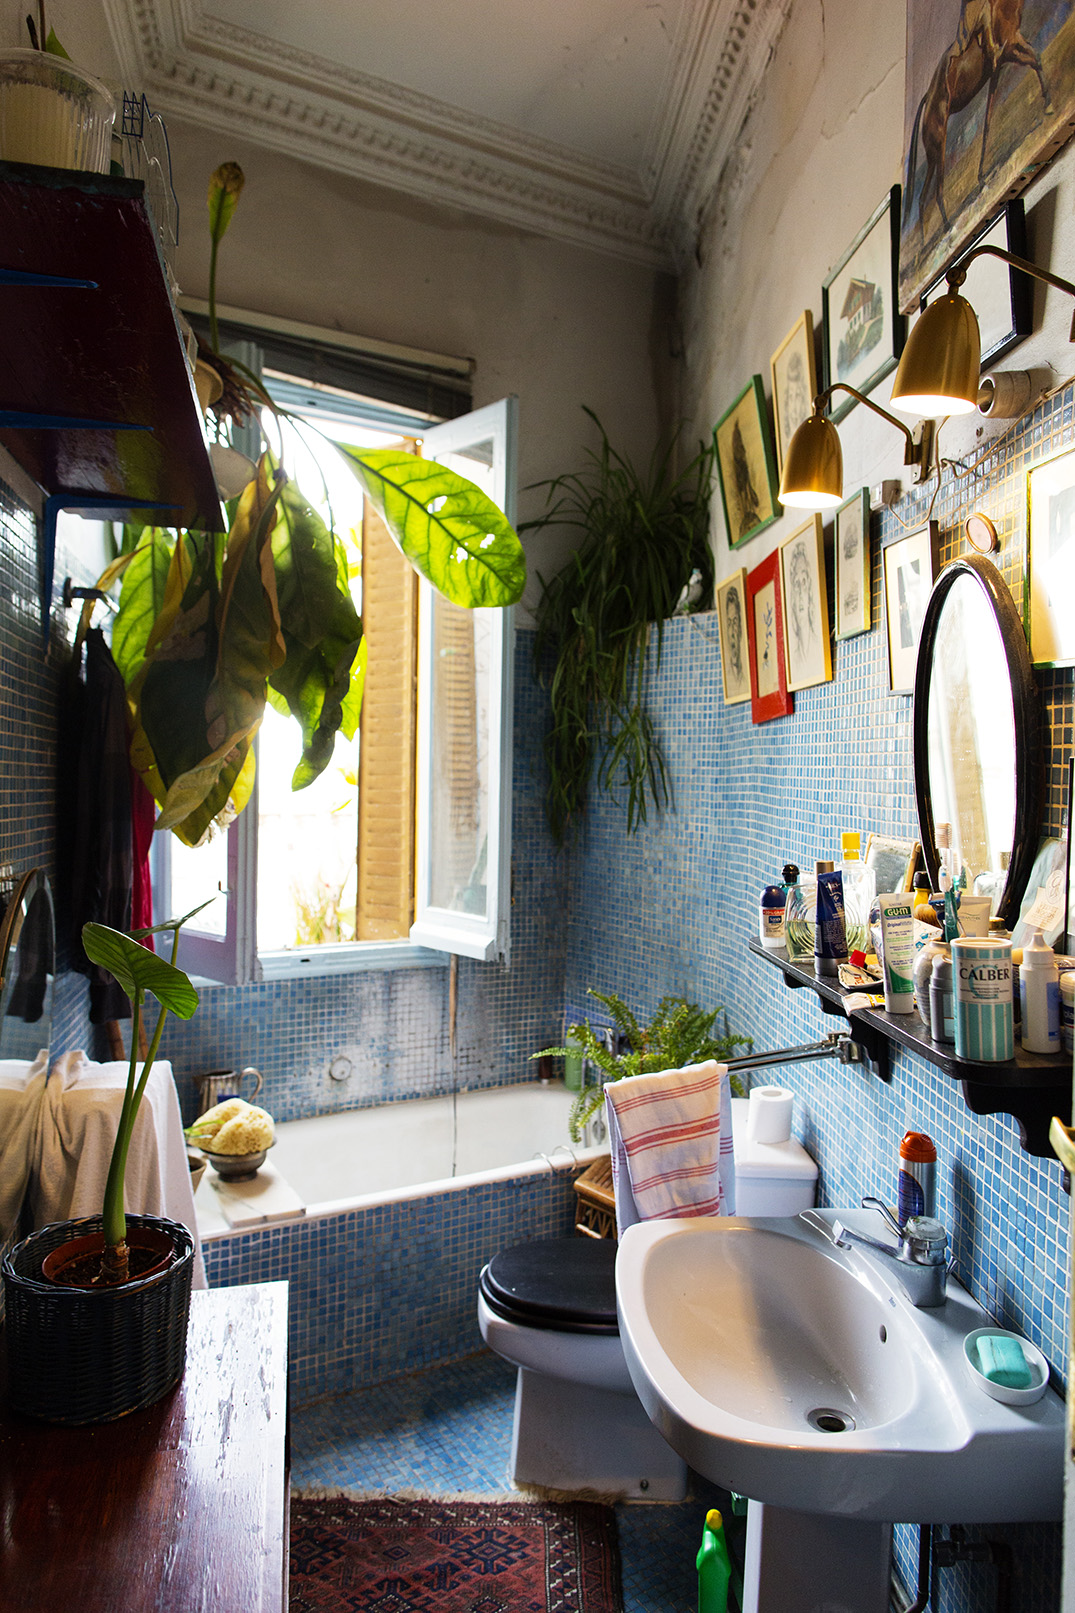 お風呂場に観葉植物 自宅バスルームの緑化計画 Izilook